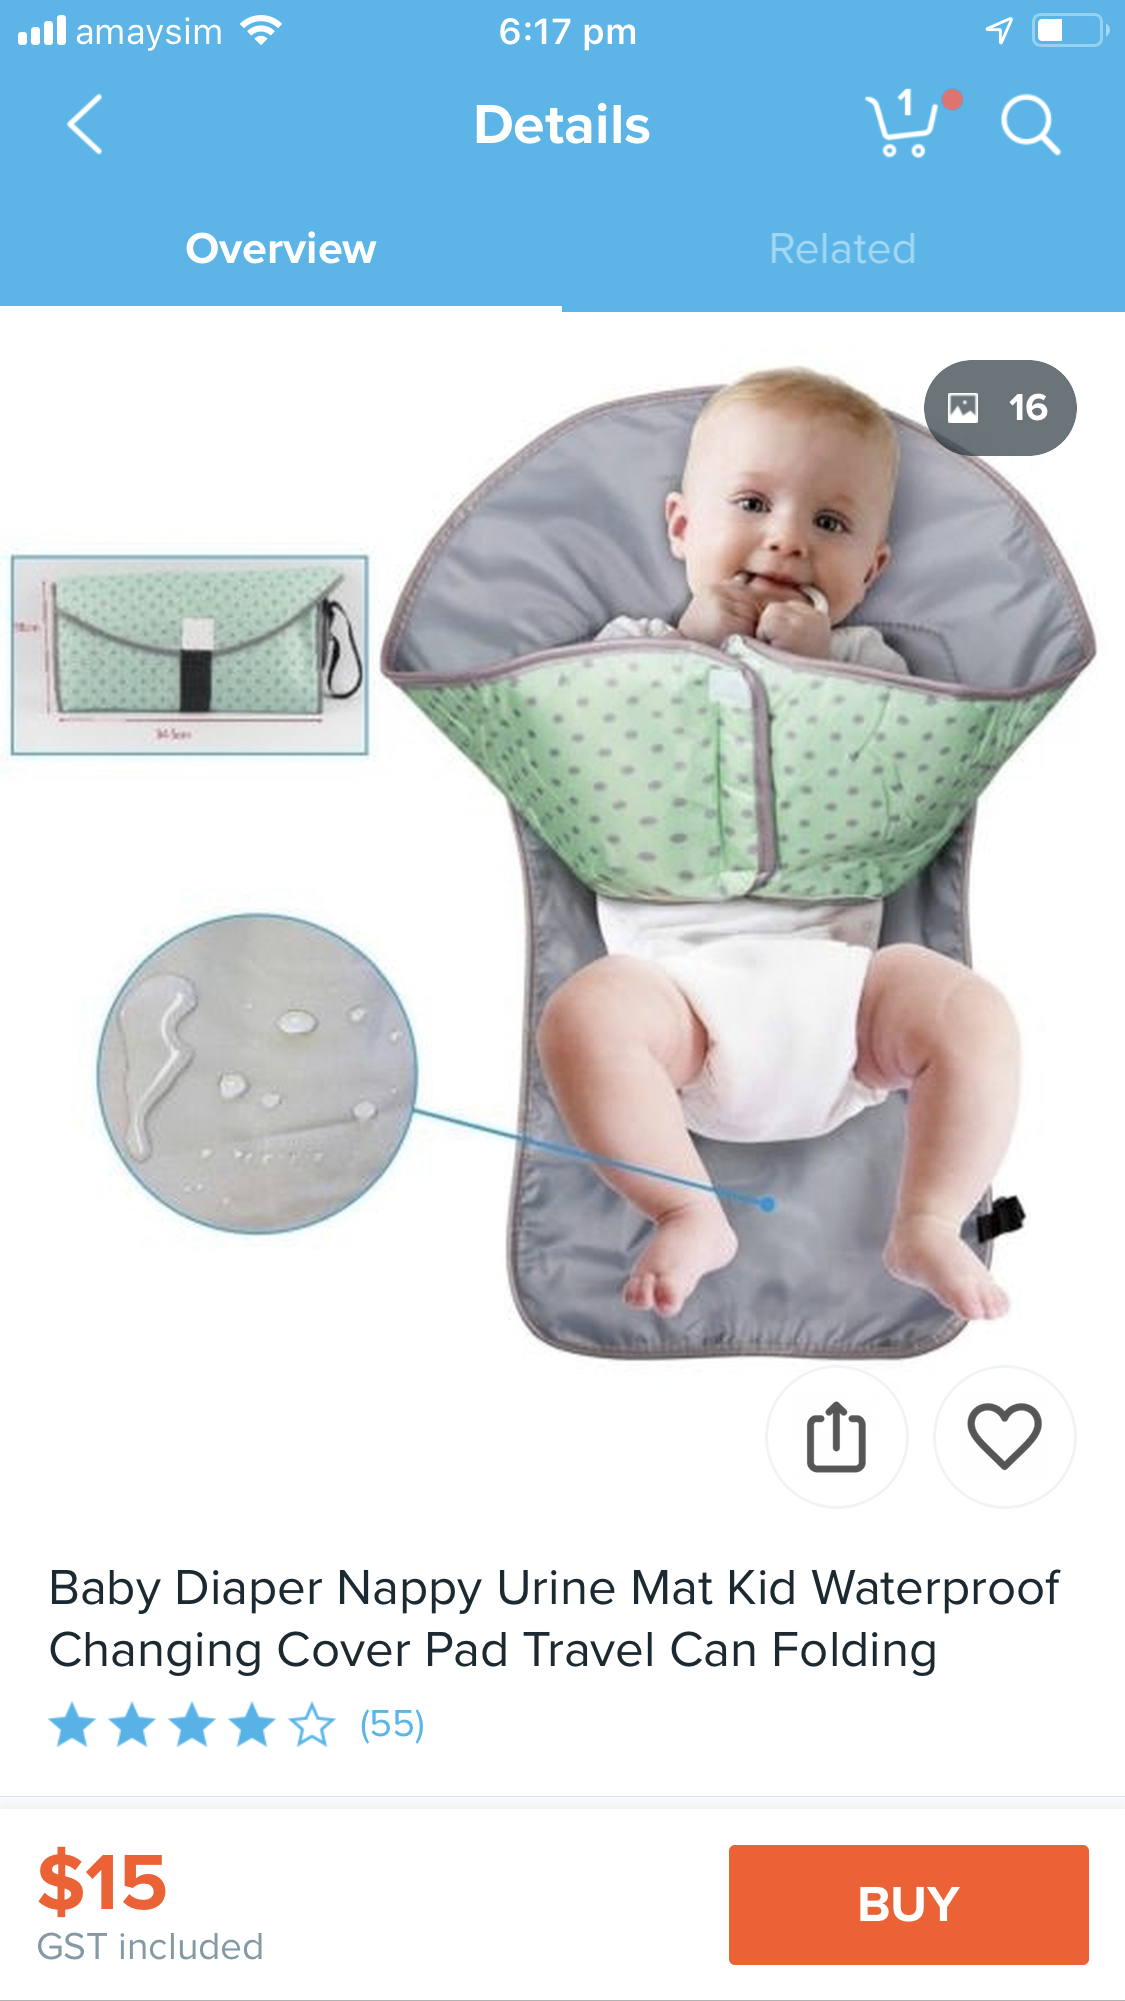 Baby diaper nappy urine mat